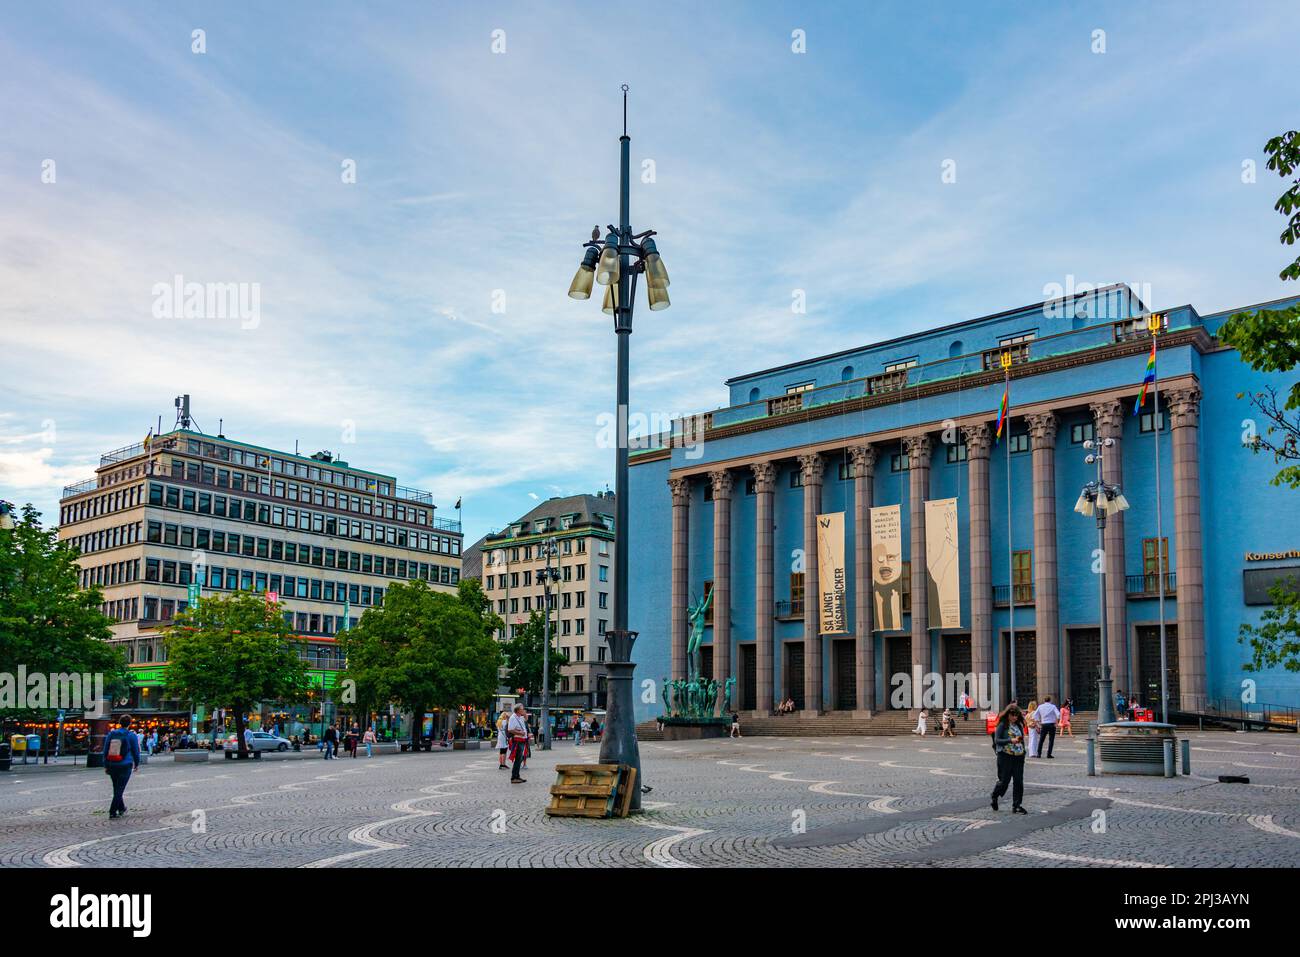 Stockholm, Sweden, August 2, 2022: Stockholm Concert Hall in Sweden. Stock Photo